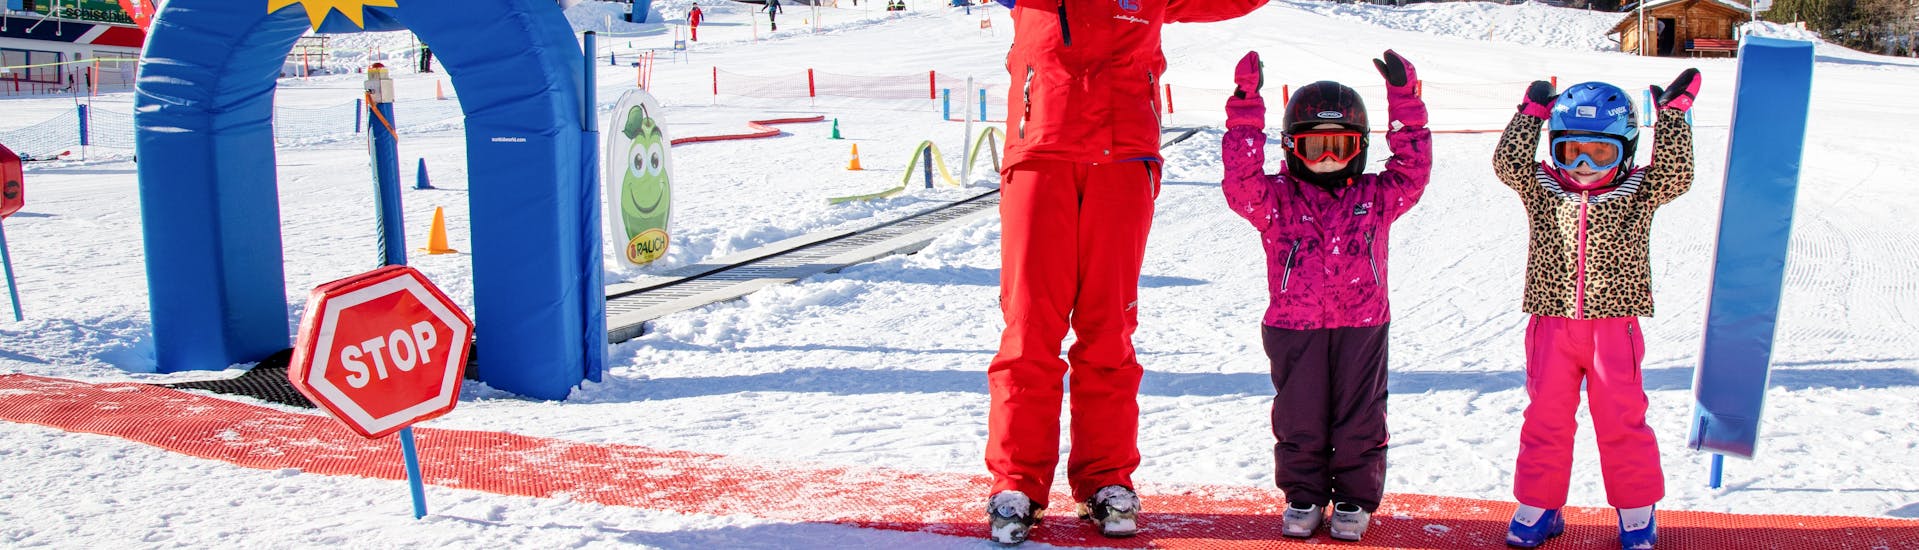 Kind lacht im Skikurs "Bambini" (3-4 Jahre) - Alle Levels Skischule Silvretta Galtür.